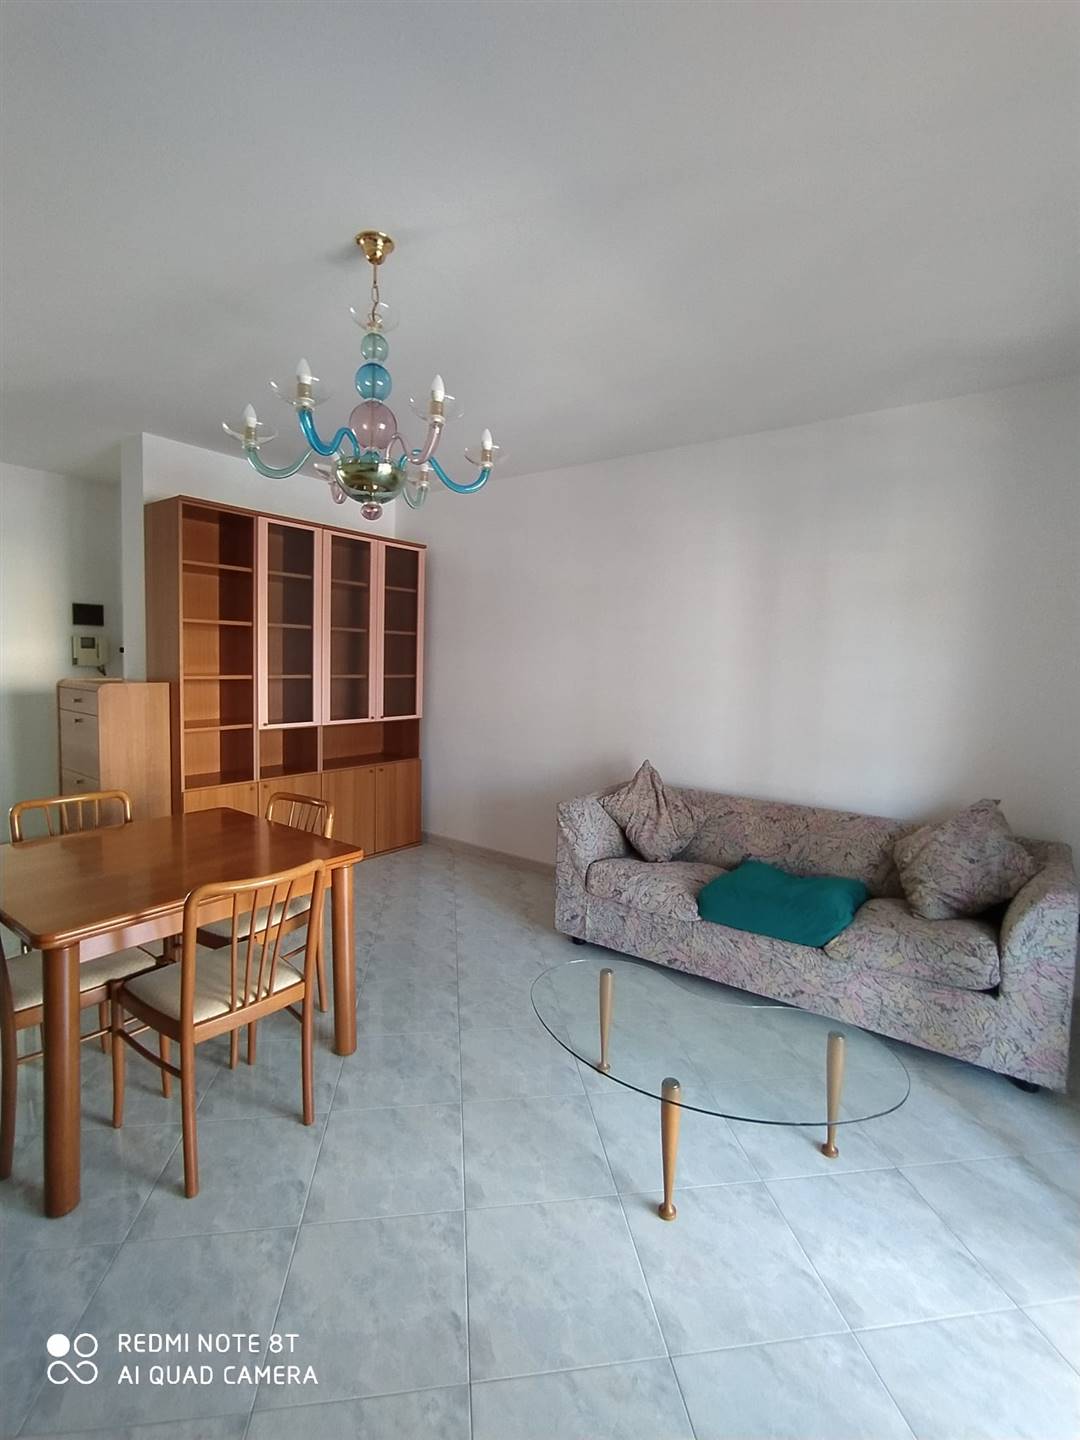 Appartamento in affitto a Lanciano, 6 locali, prezzo € 600 | CambioCasa.it